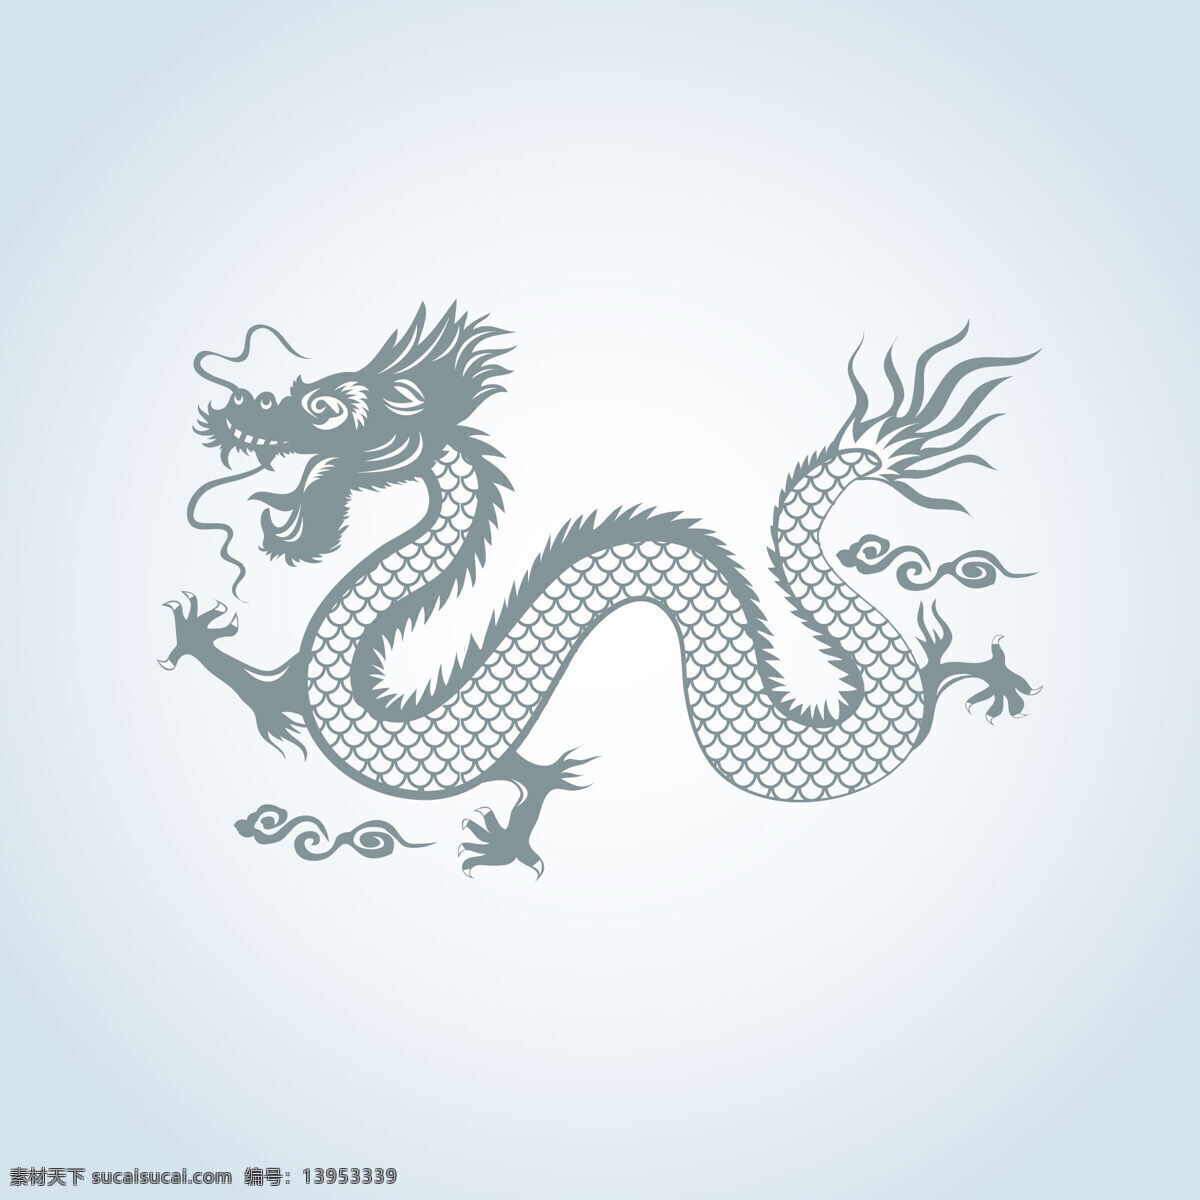 中国龙 龙 神龙 西方龙 手绘神龙 龙图腾 飞龙